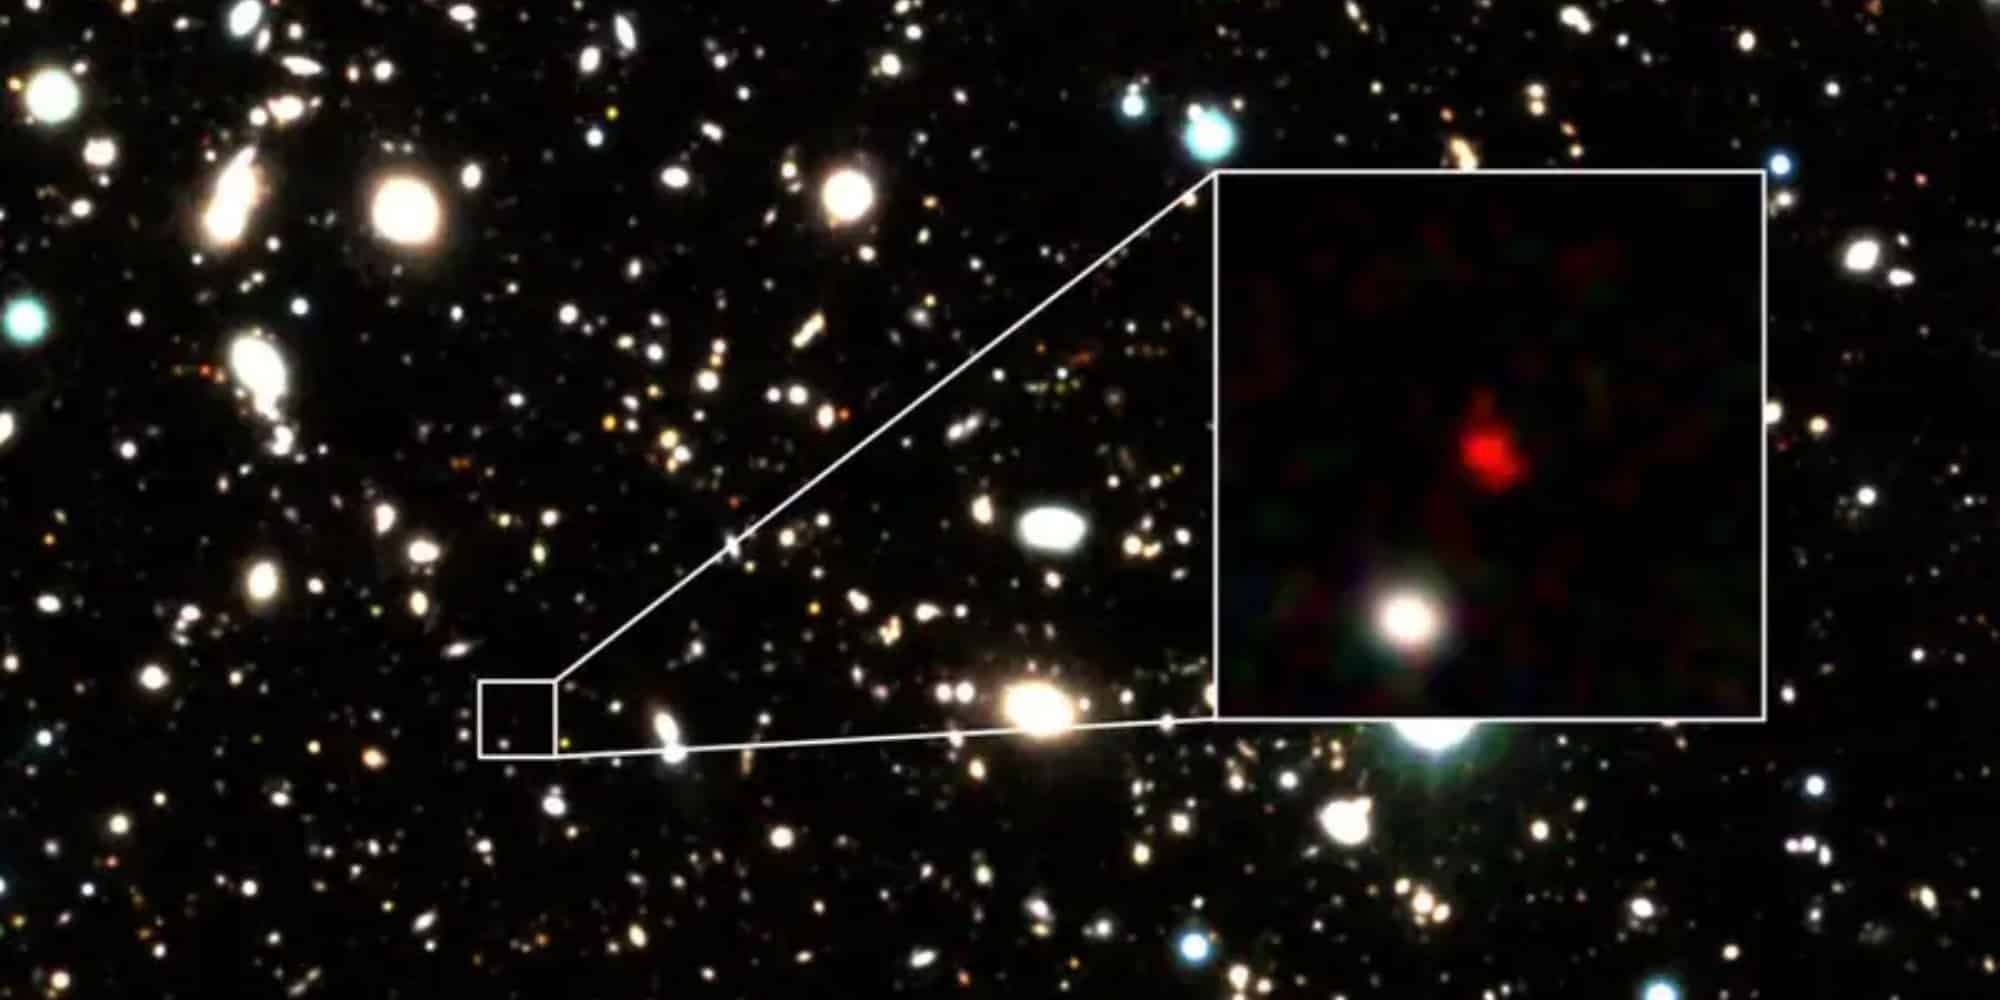 Ανακαλύφθηκε ο πιο μακρινός γαλαξίας σε απόσταση 13,5 δισεκατομμυρίων ετών φωτός (εικόνες)